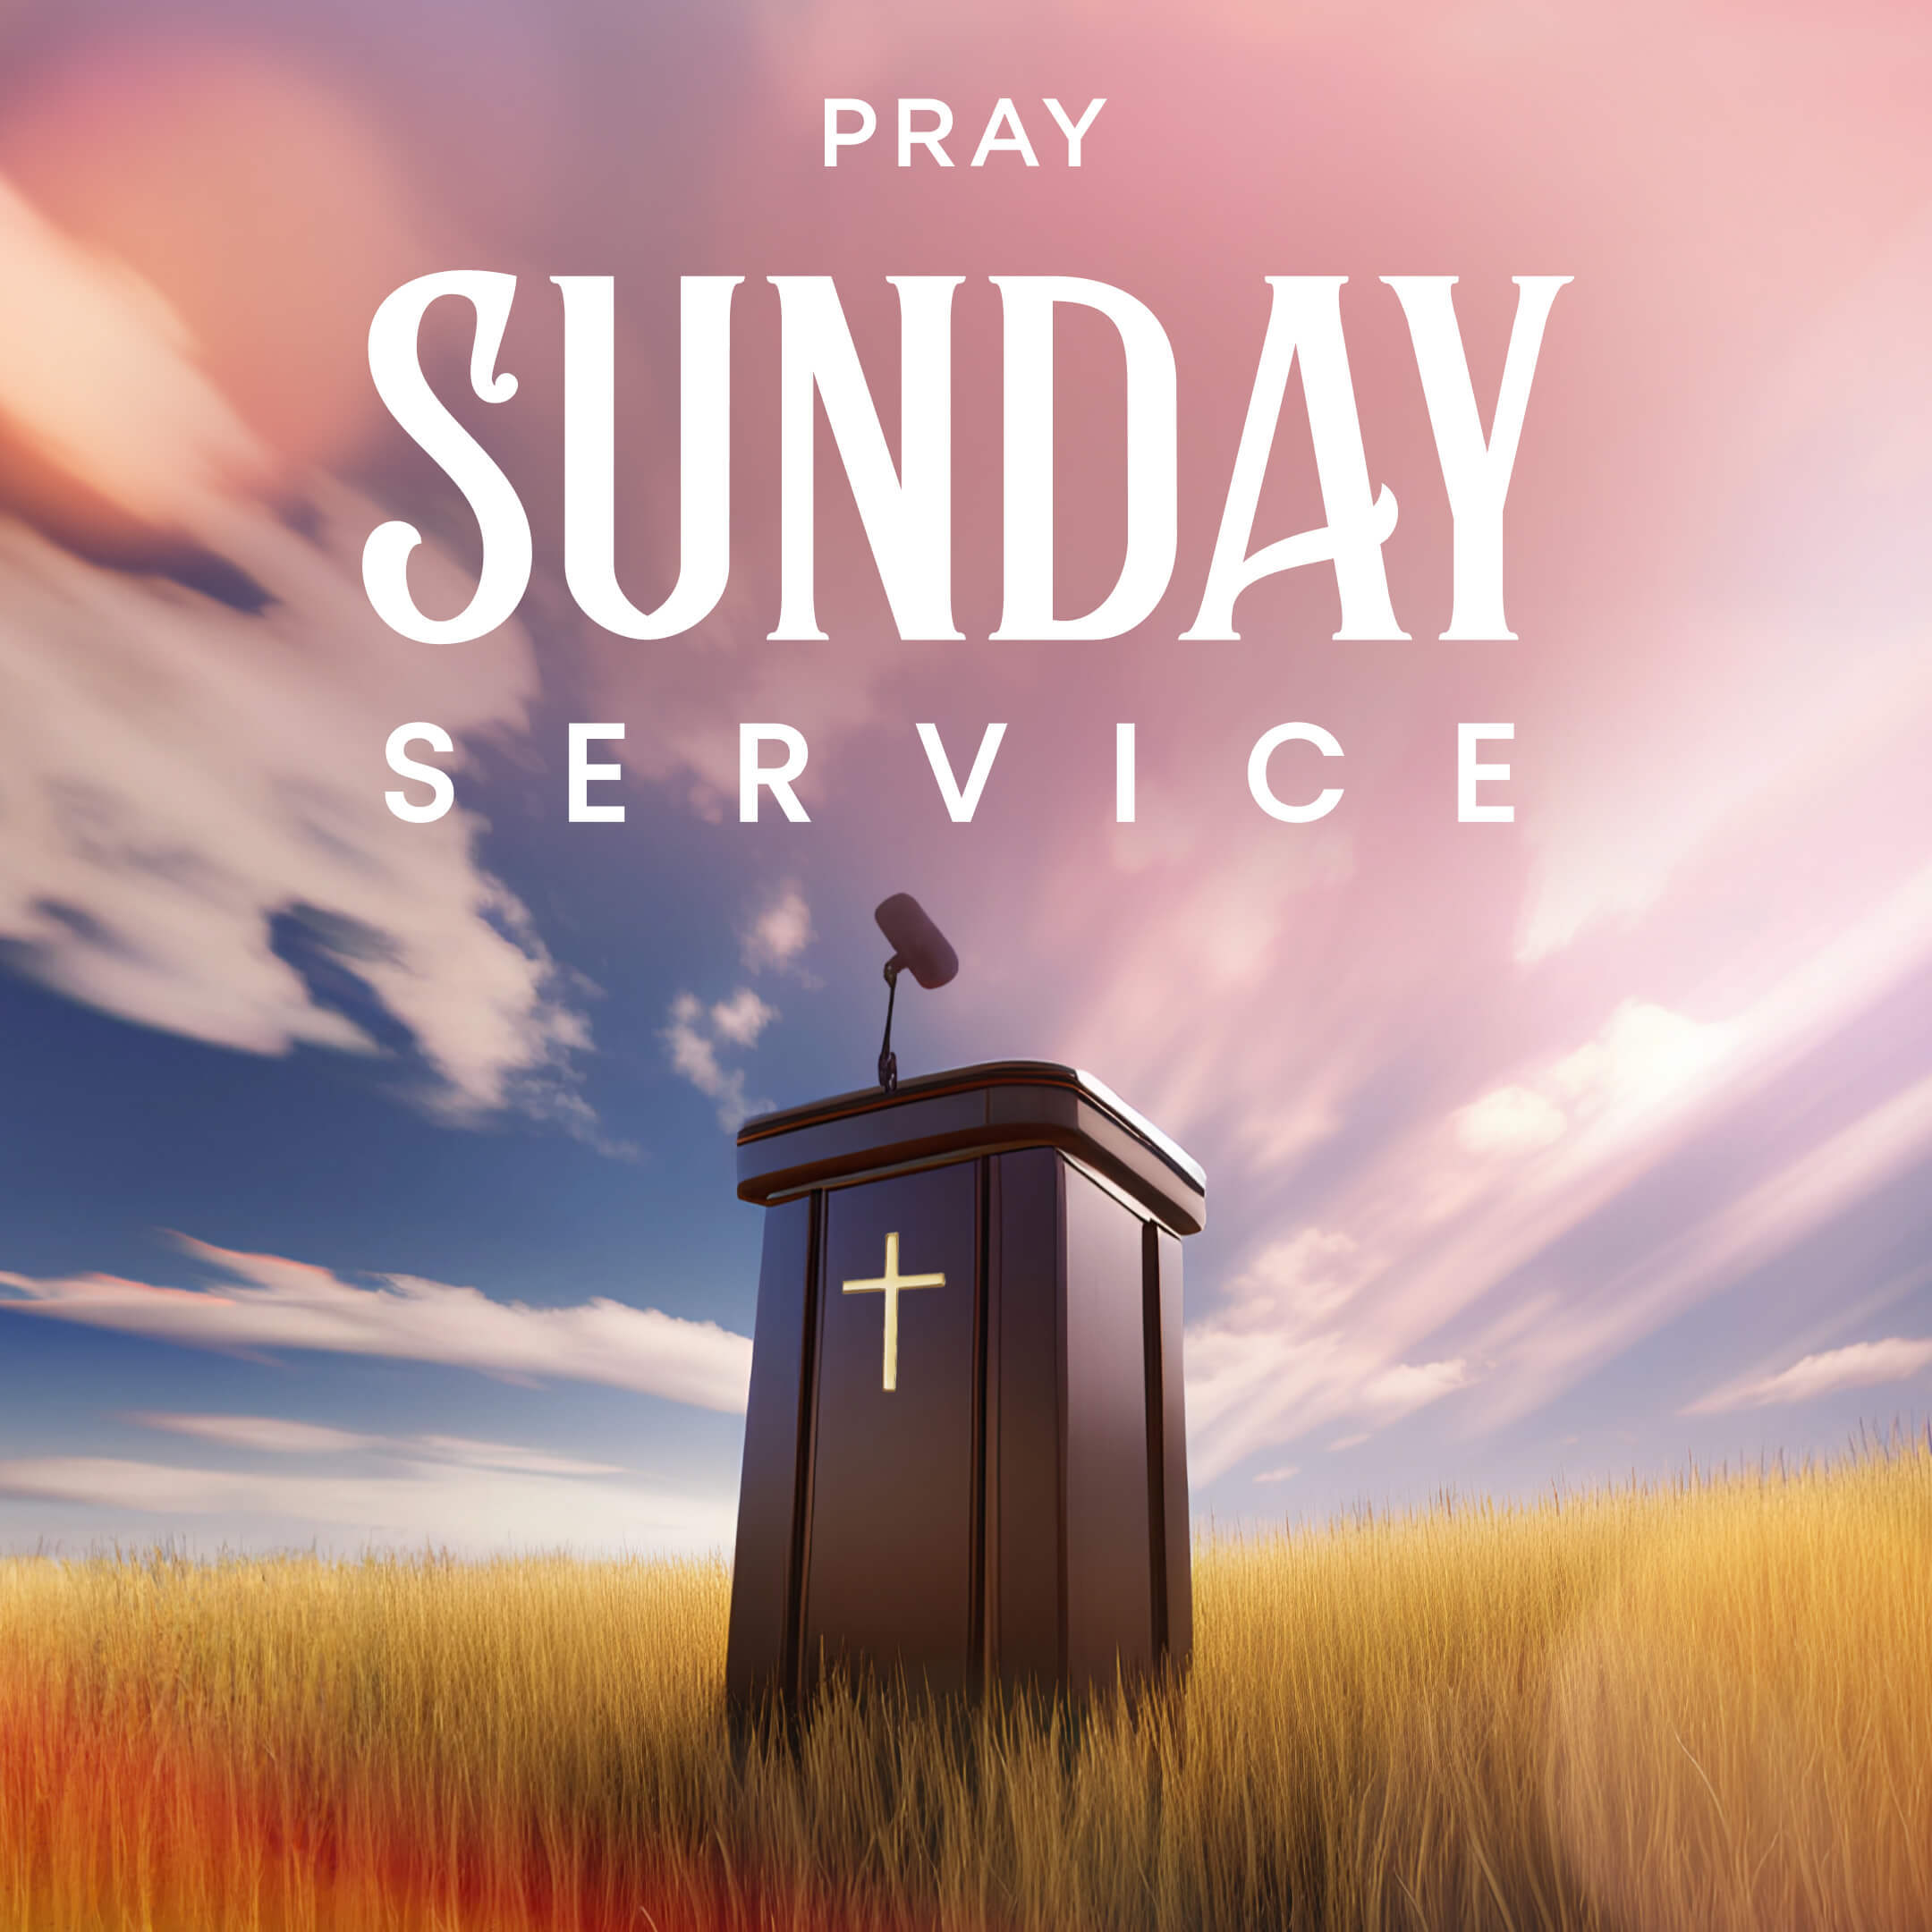 Sunday Service by Pray.com